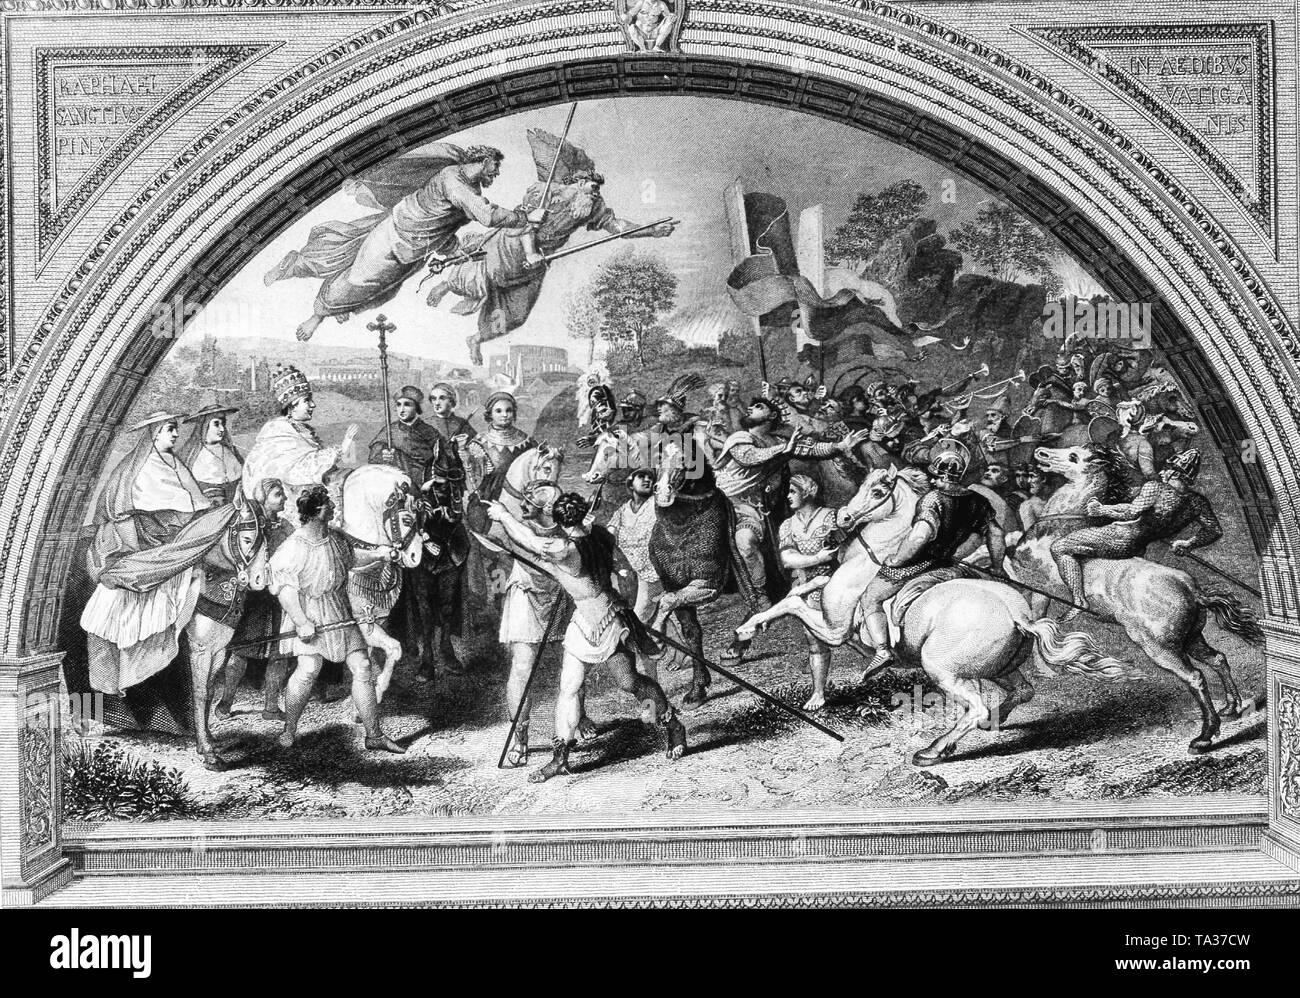 Die Sitzung der Leo der Große und Attila Gemälde von Raffael im Vatikan Museum in Rom zeigt die storied vergehen zwischen dem Papst und dem Hun Eroberer, und umfasst die legendären Bilder von St. Peter und Paul in den Himmel Lager Schwerter Stockfoto